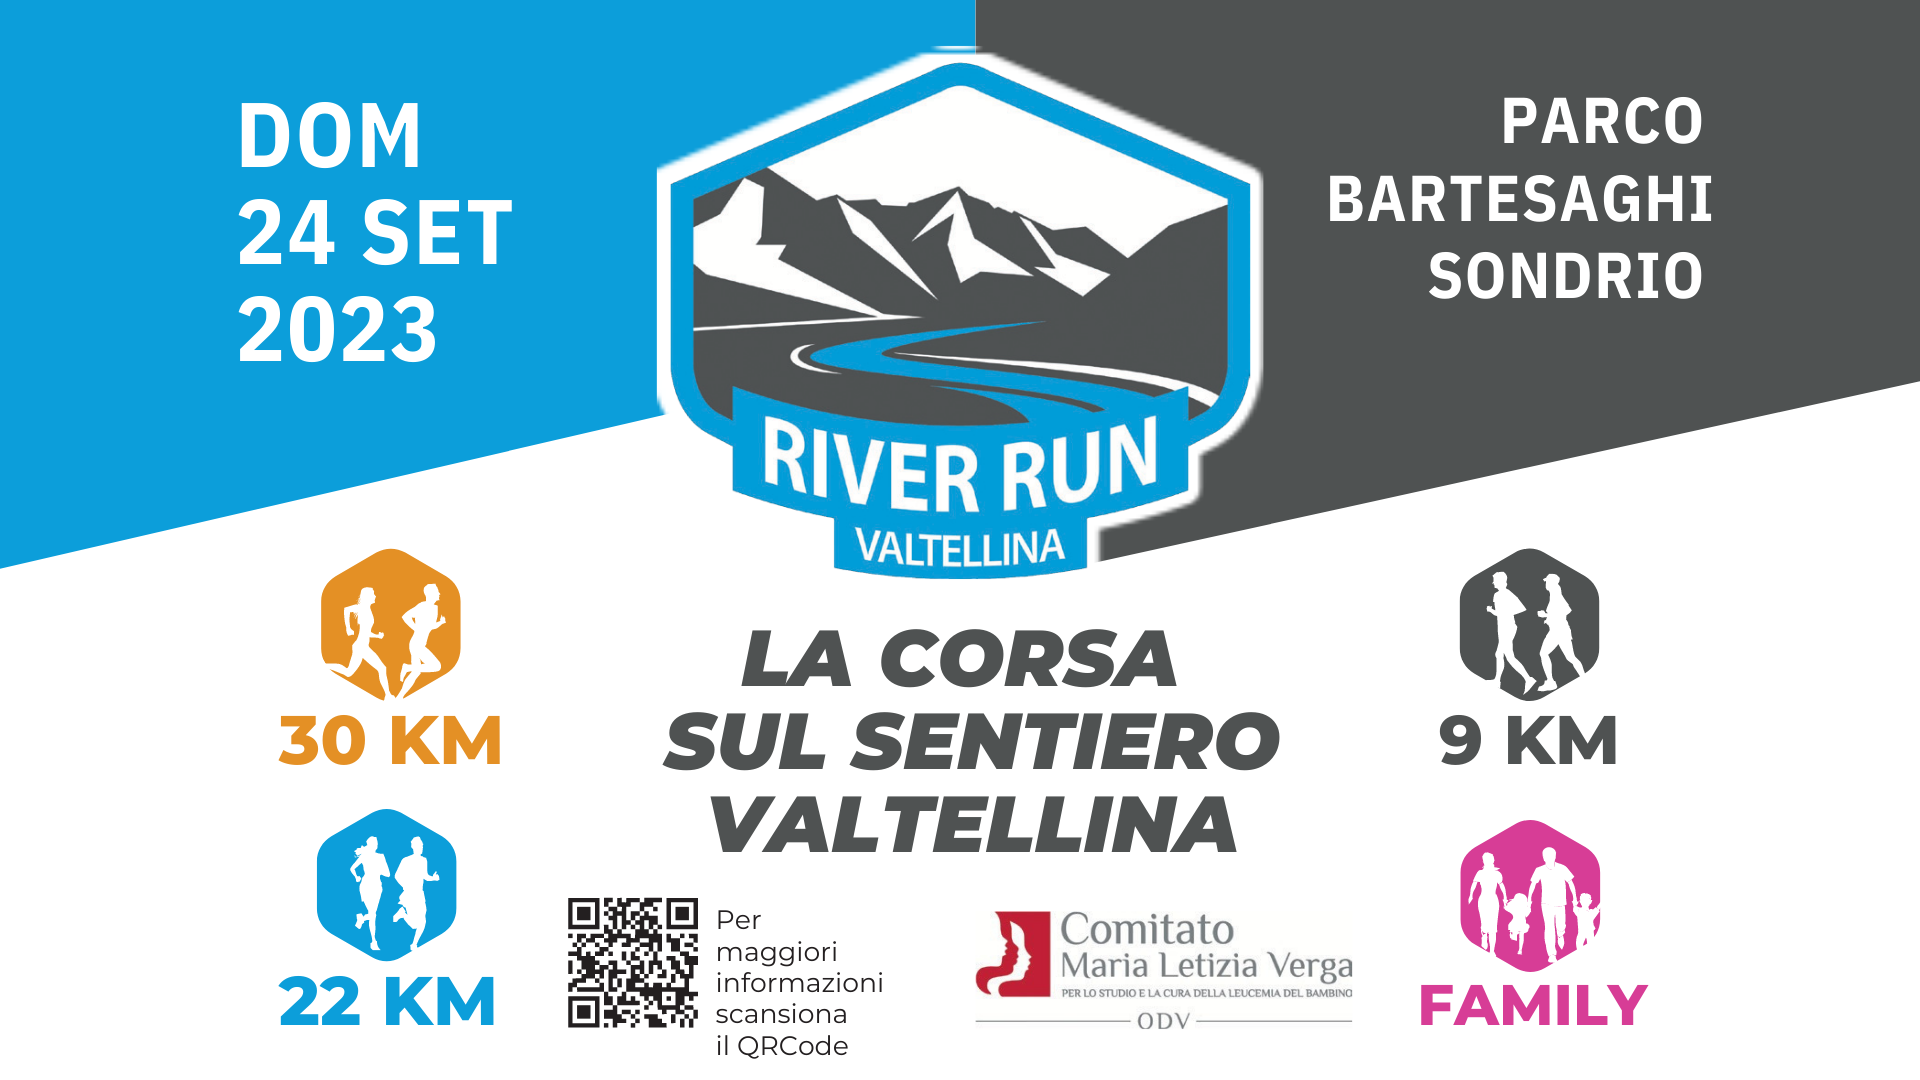 River Run Valtellina